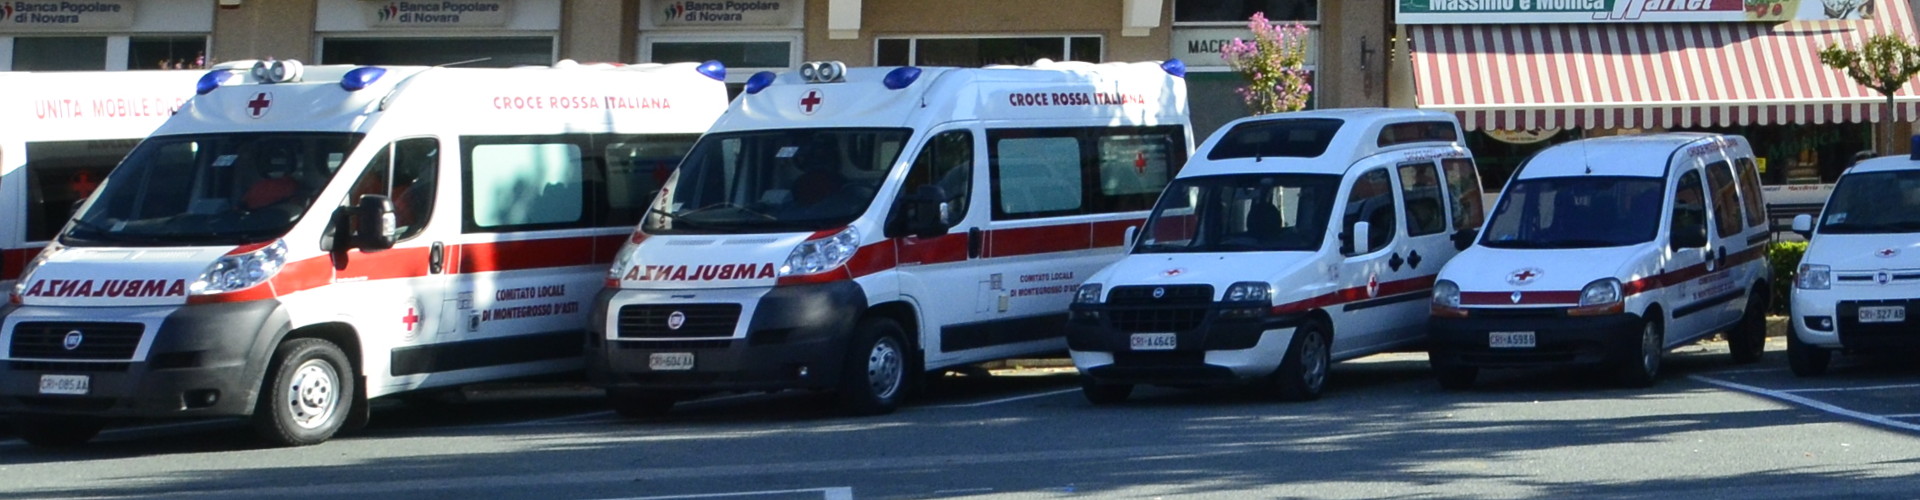 Croce Rossa Montegrosso d'Asti